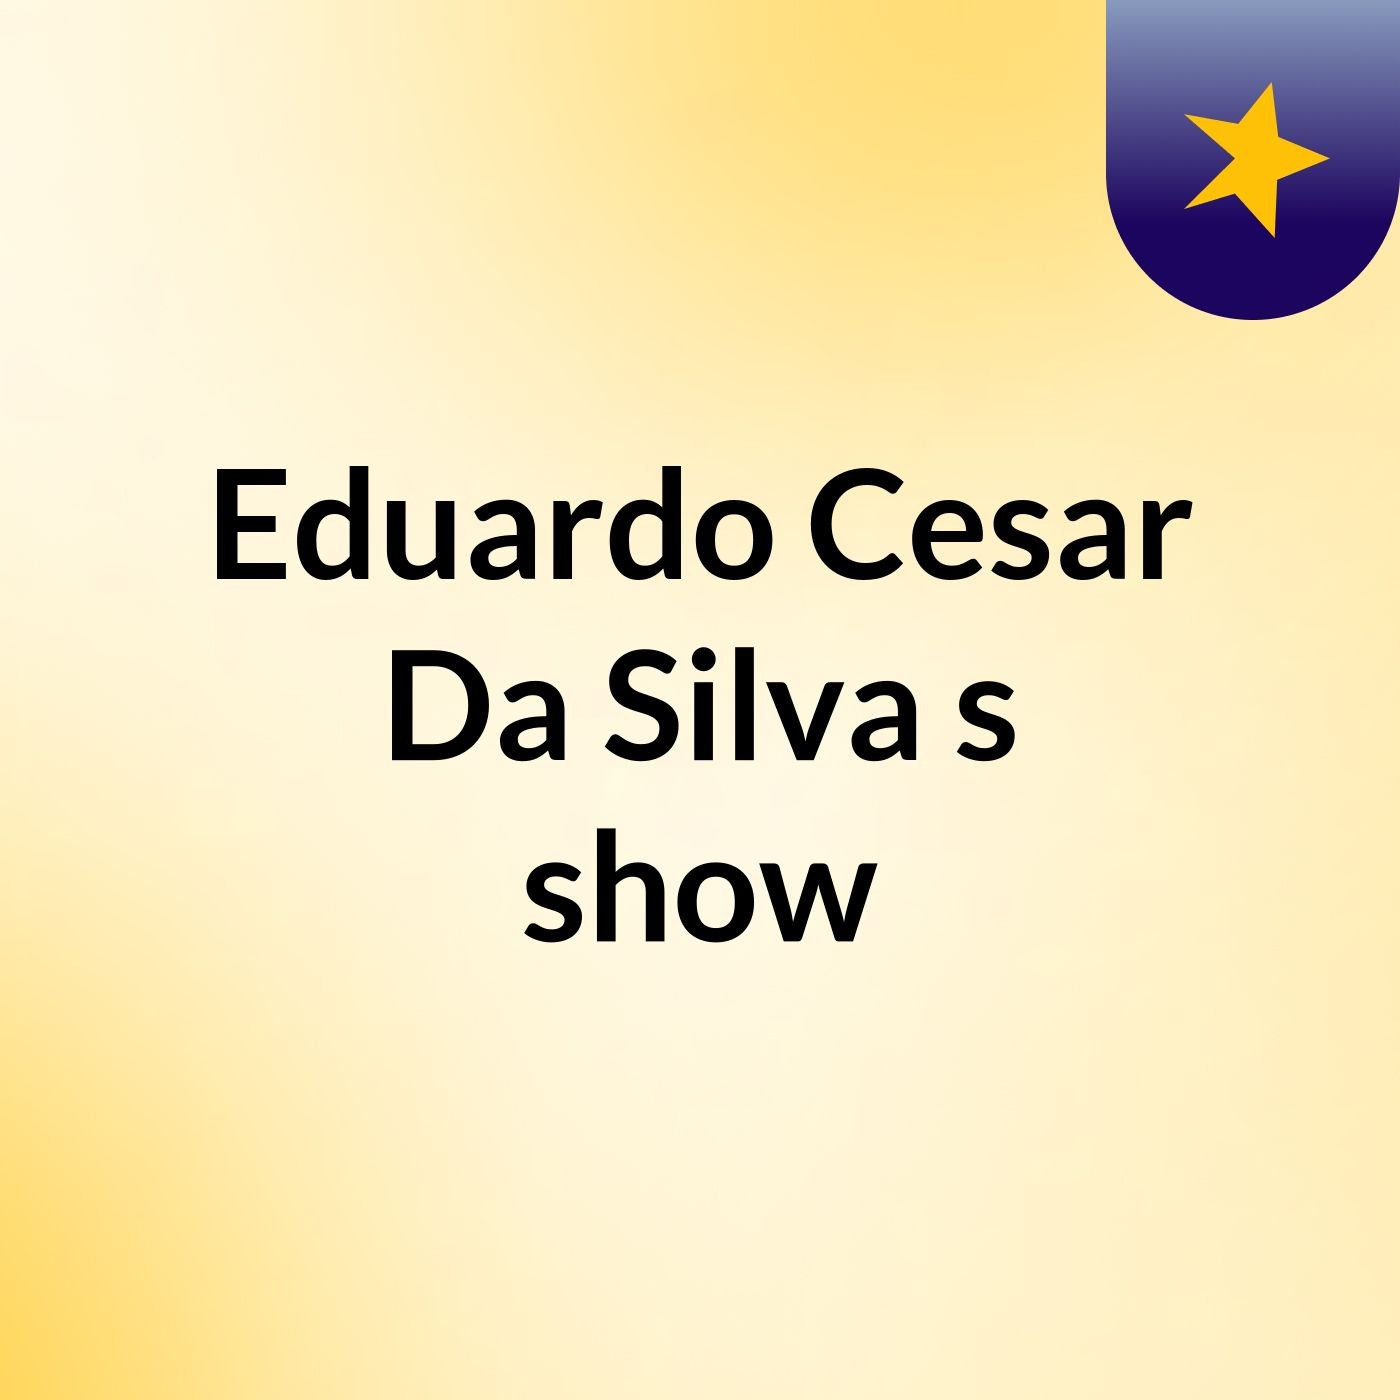 Eduardo Cesar Da Silva's show